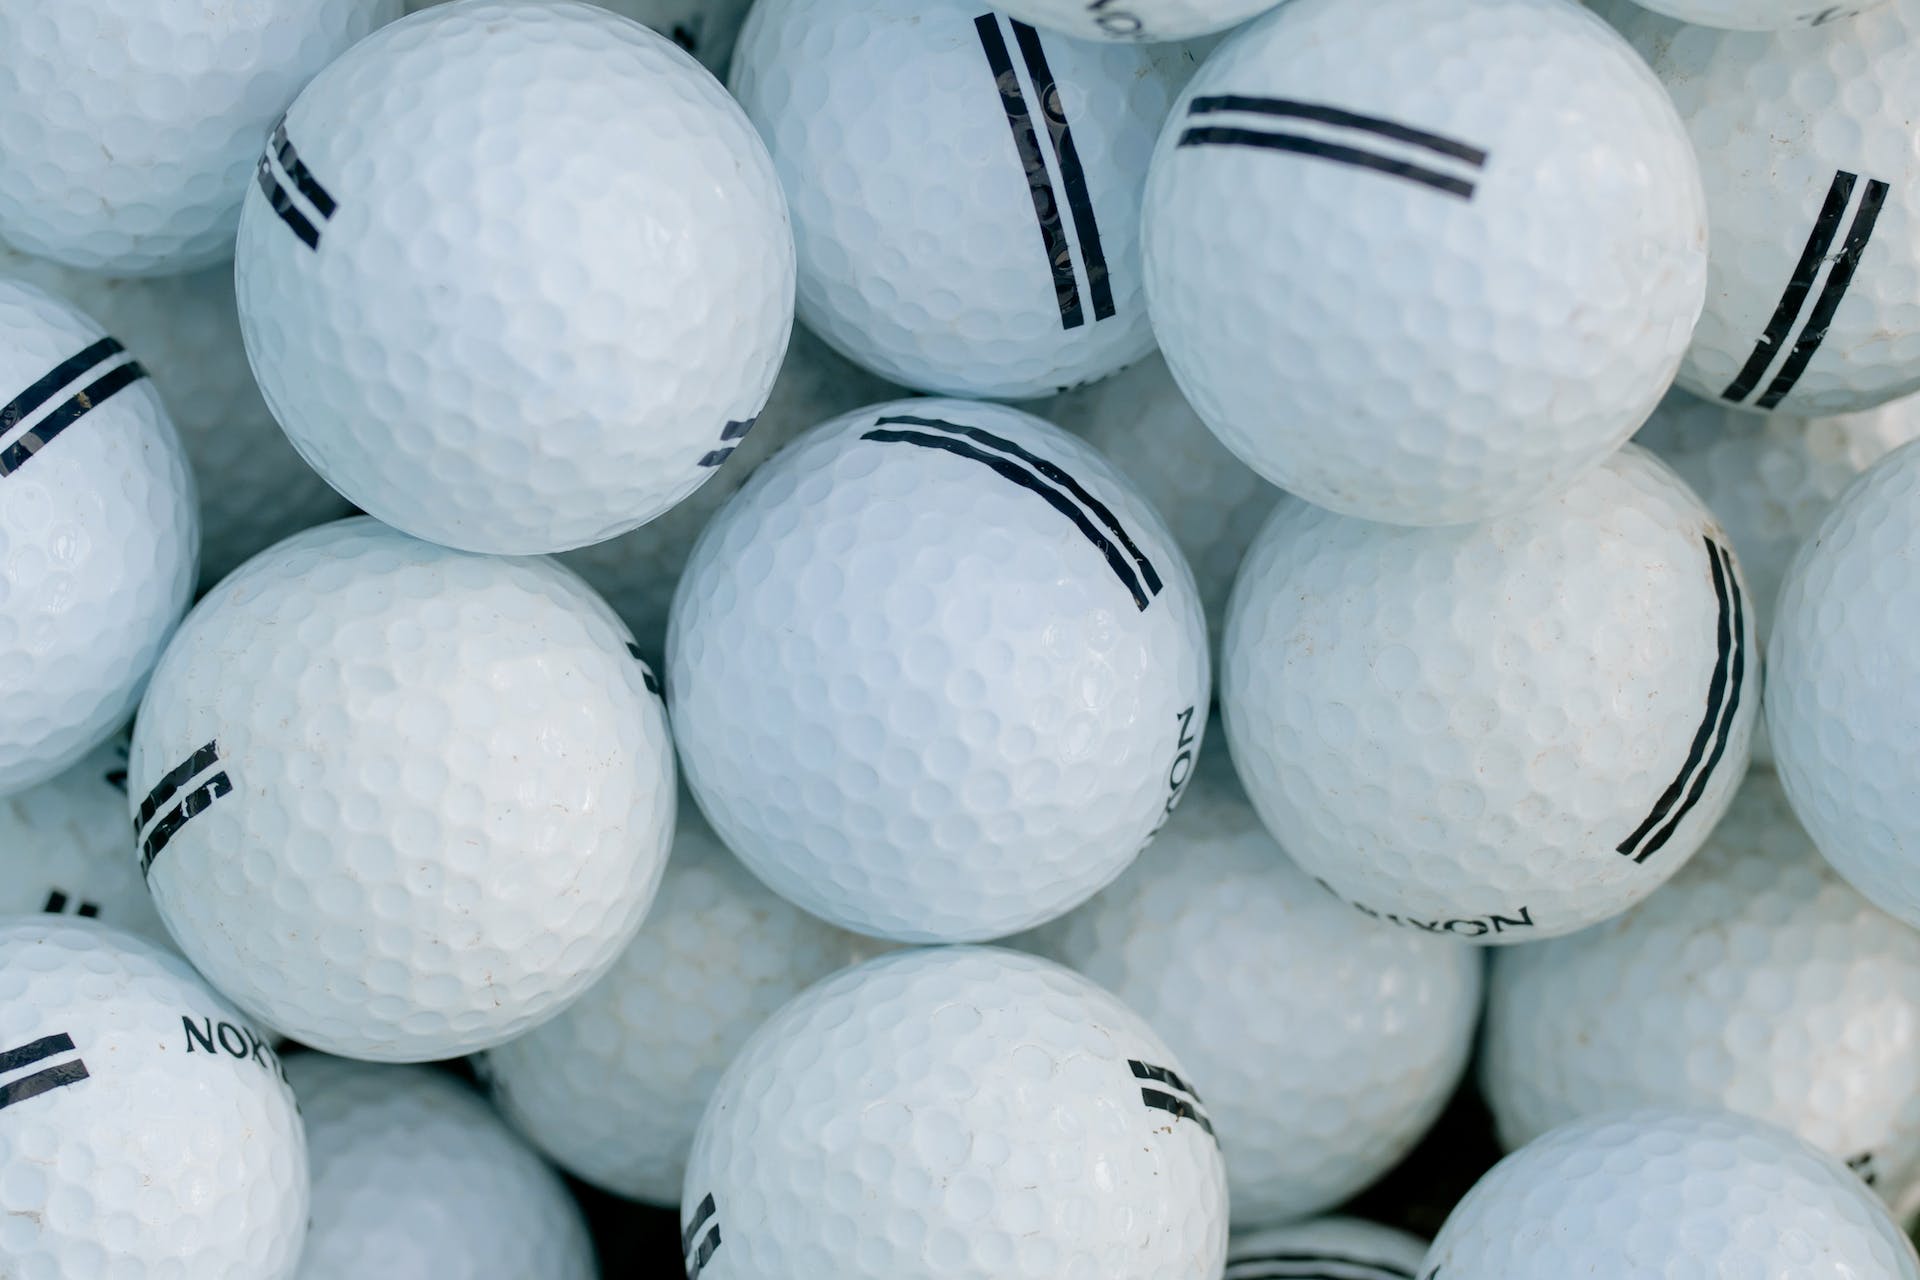 Golf balls | Source: Pexels